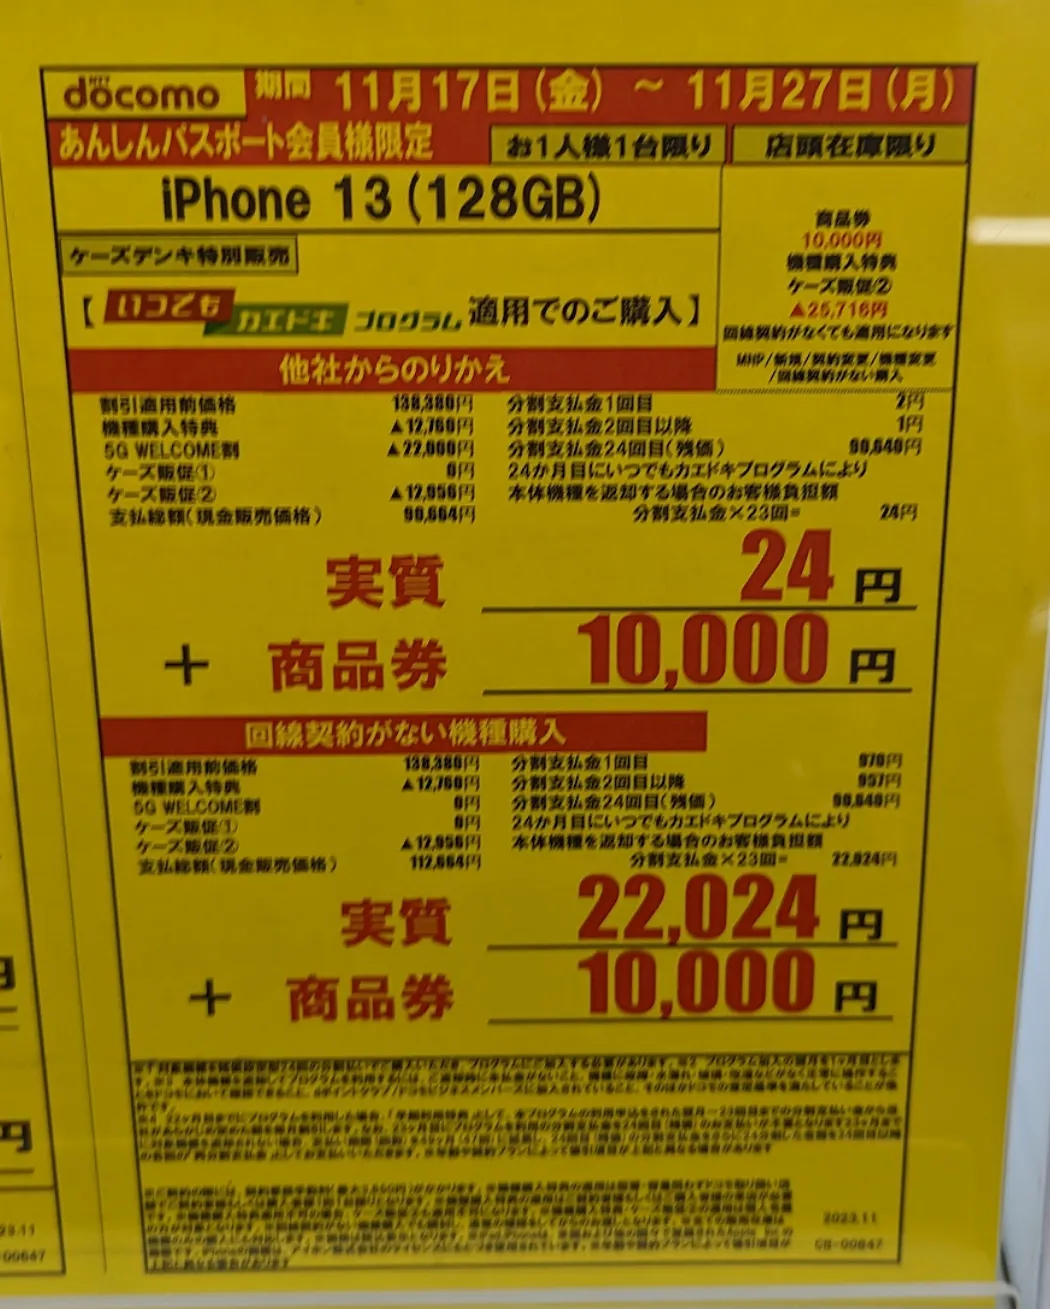 ケーズデンキ「iPhone 13」がMNPで実質1円と現金10,000円で投げ売り